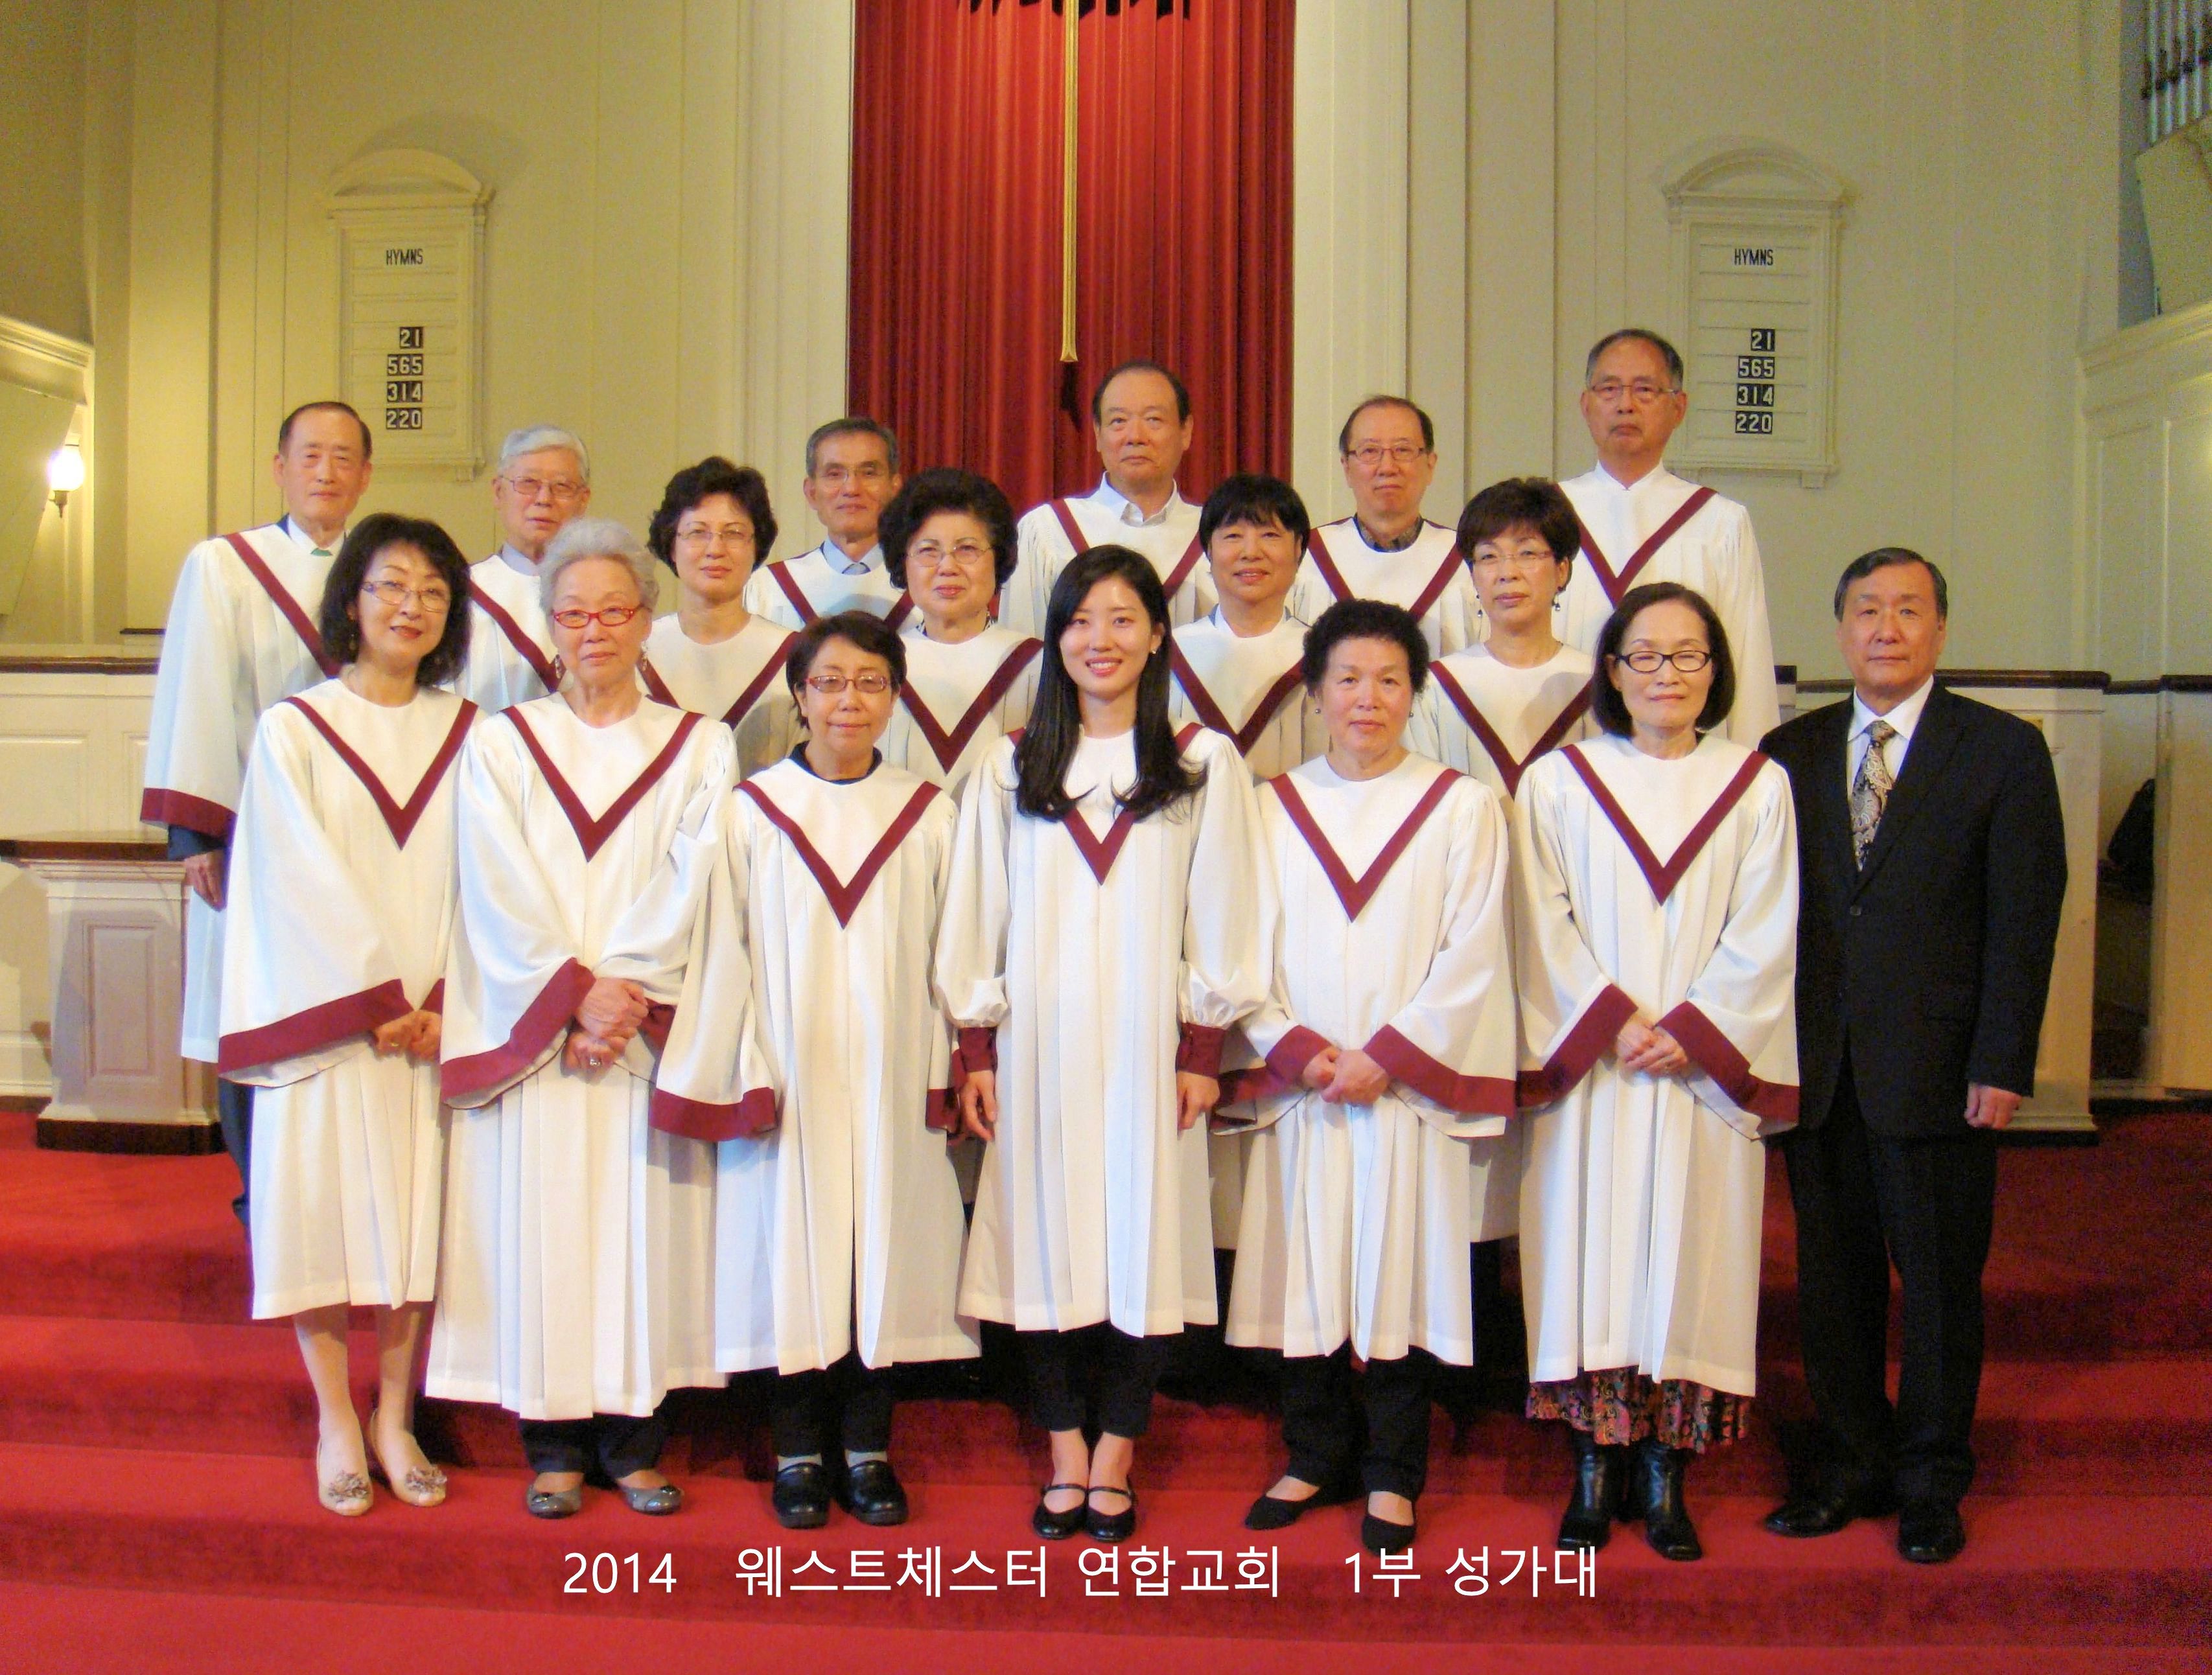 choir team photo